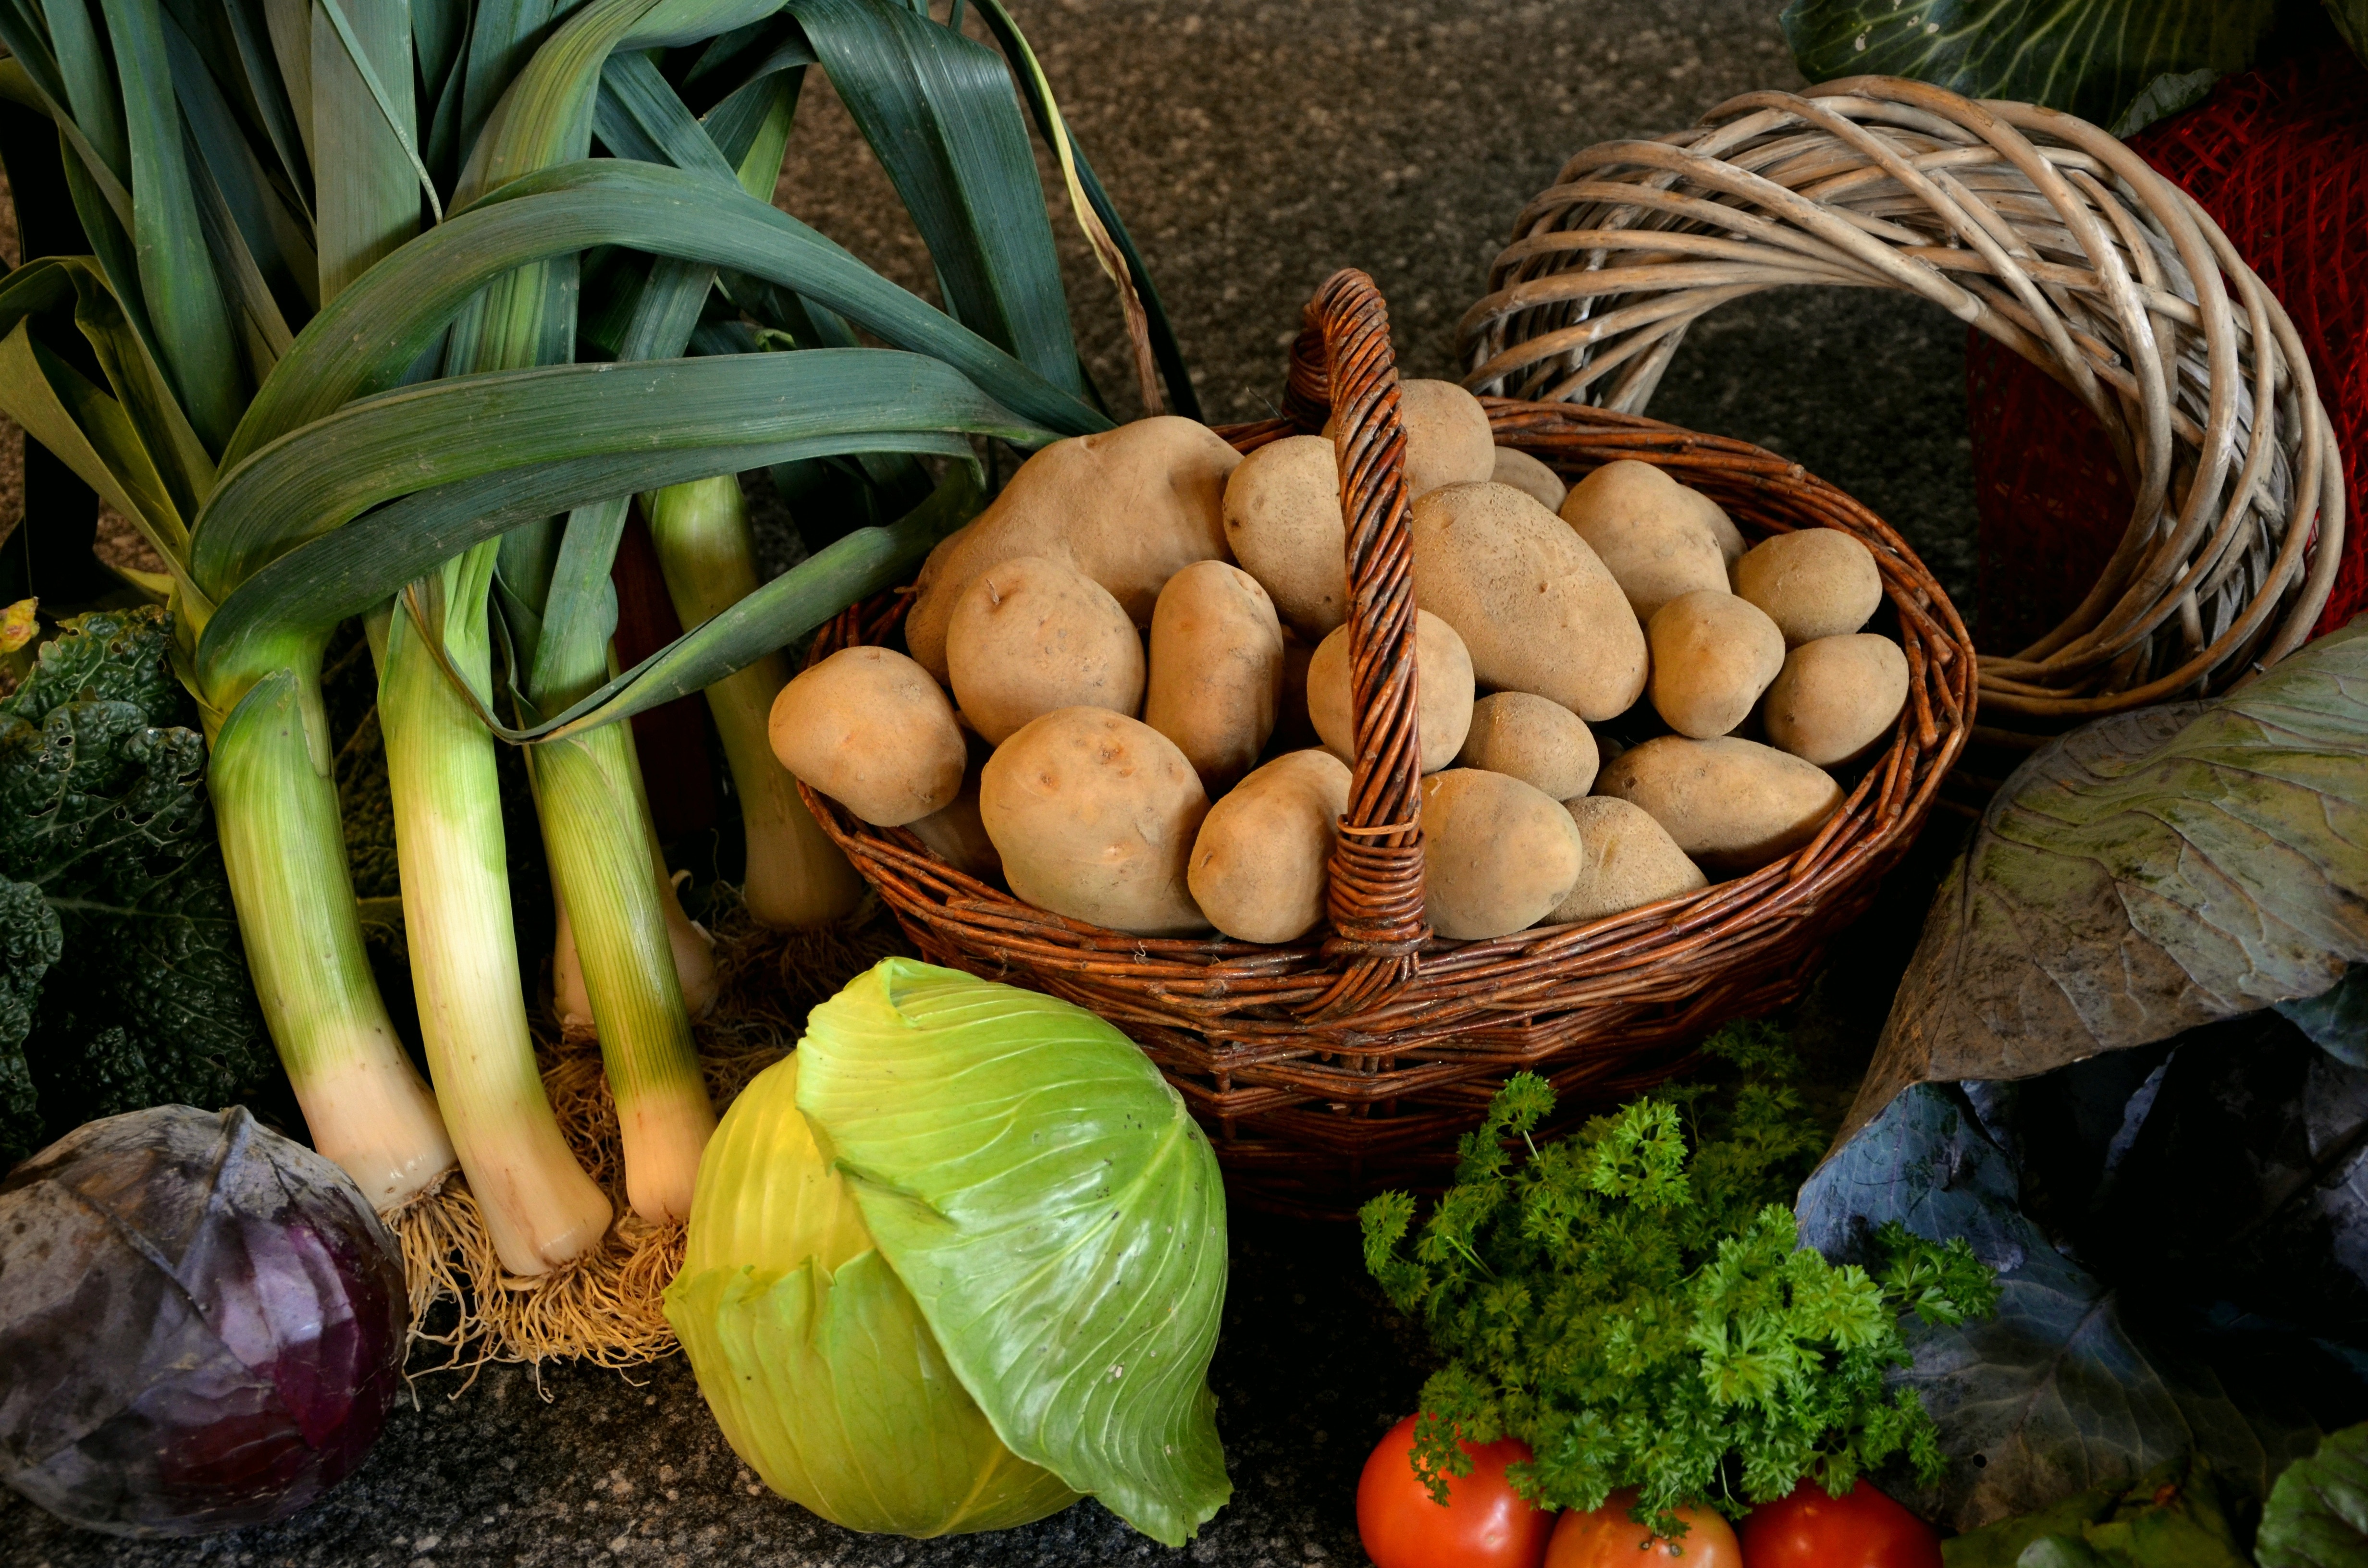 Thanksgiving, Vegetables, Harvest, food and drink, basket